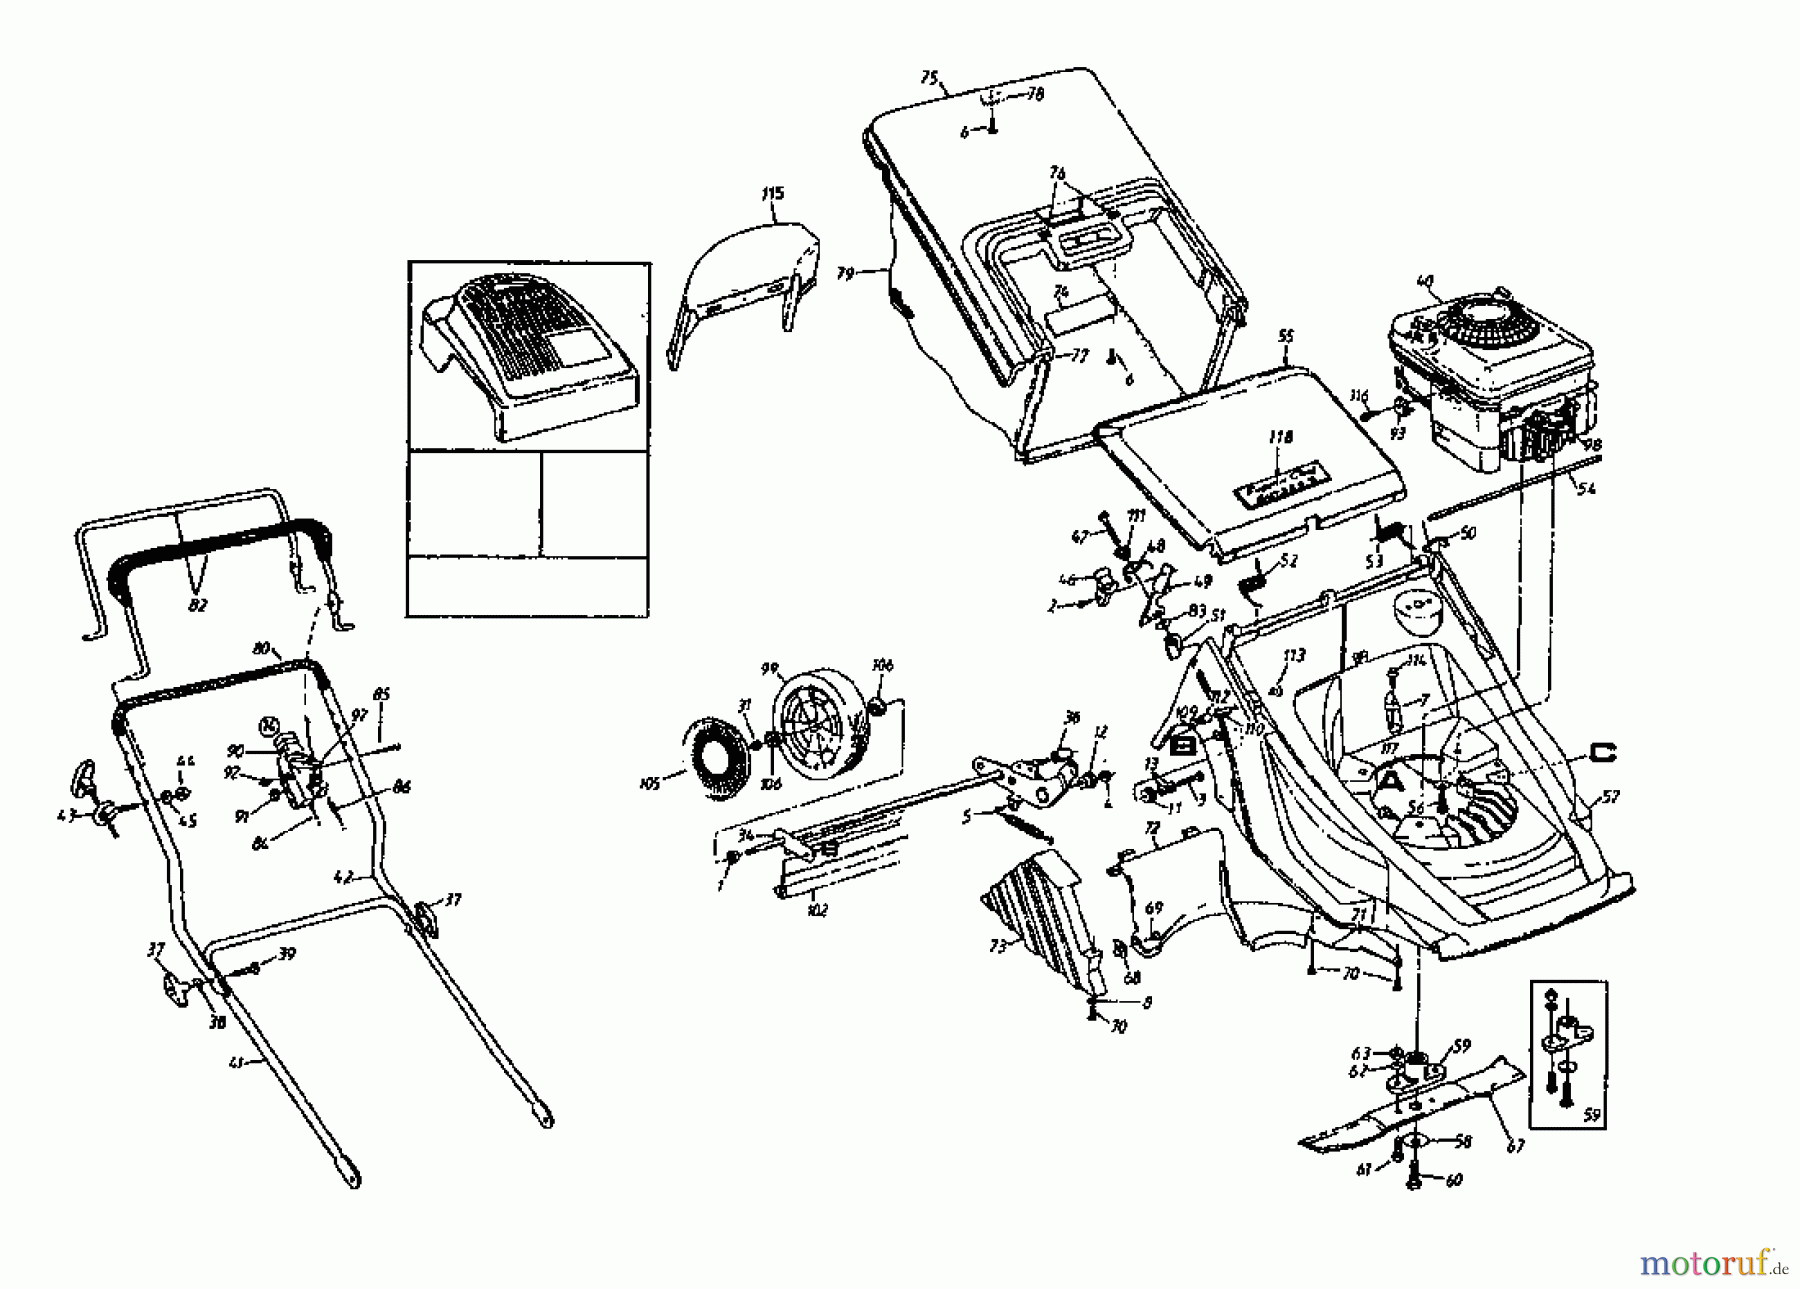  Gutbrod Tondeuse thermique MH 464 B 04049.01  (1996) Machine de base